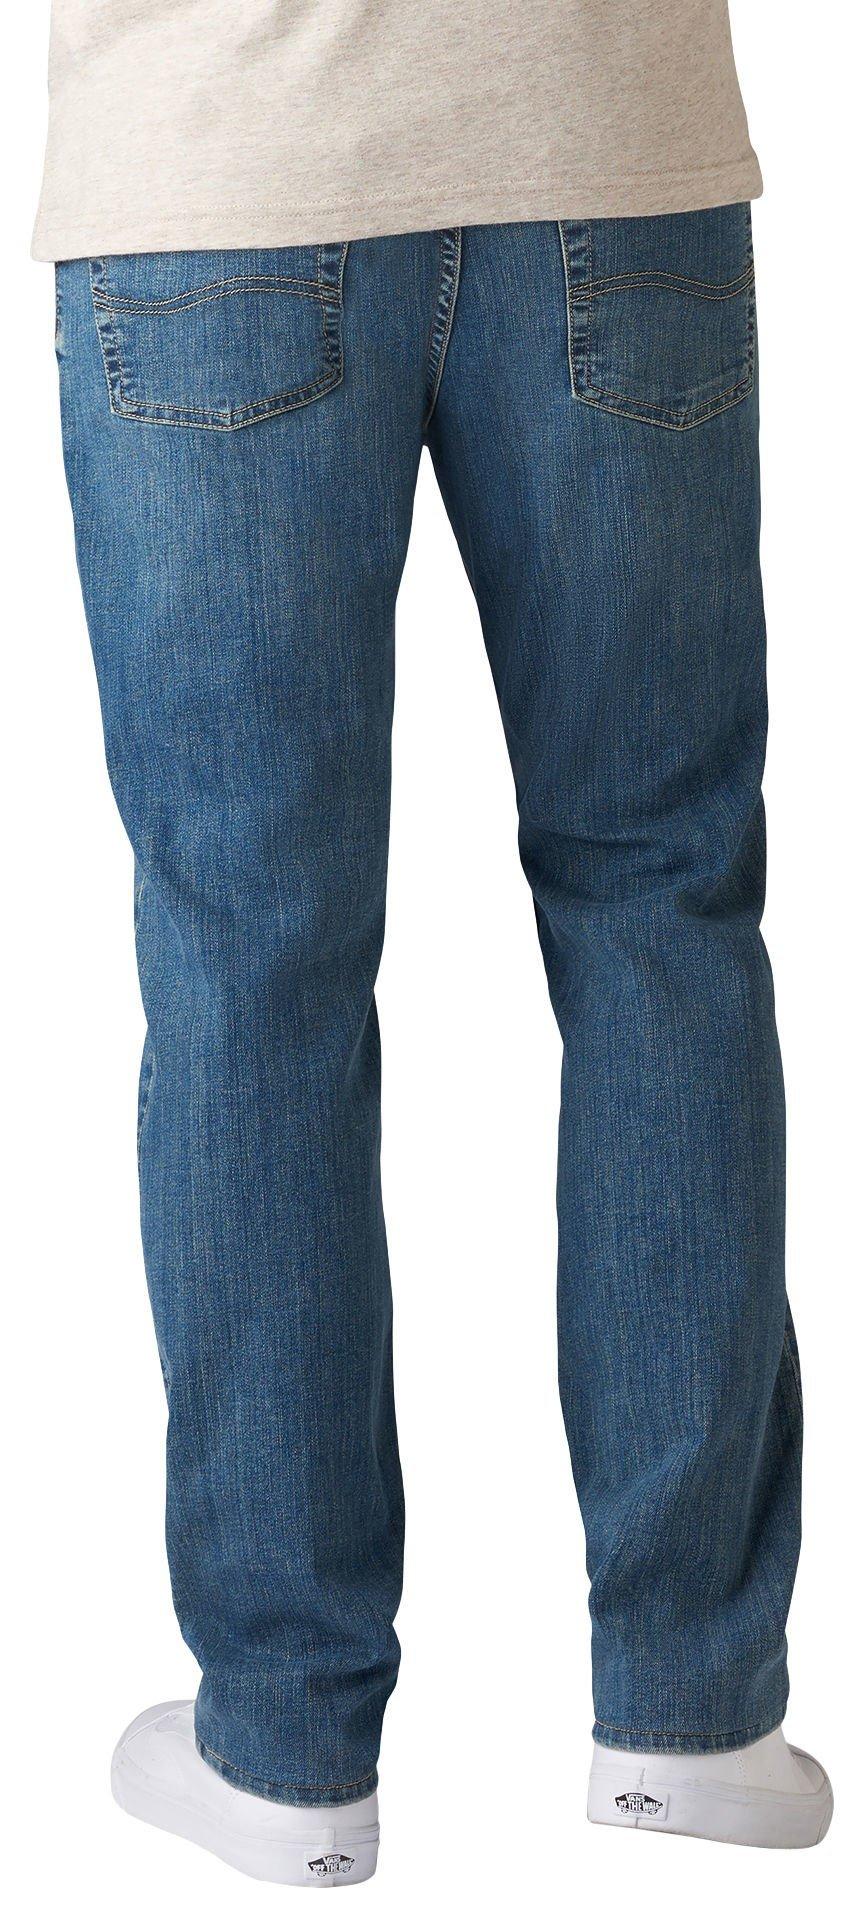 lee men's flex jeans